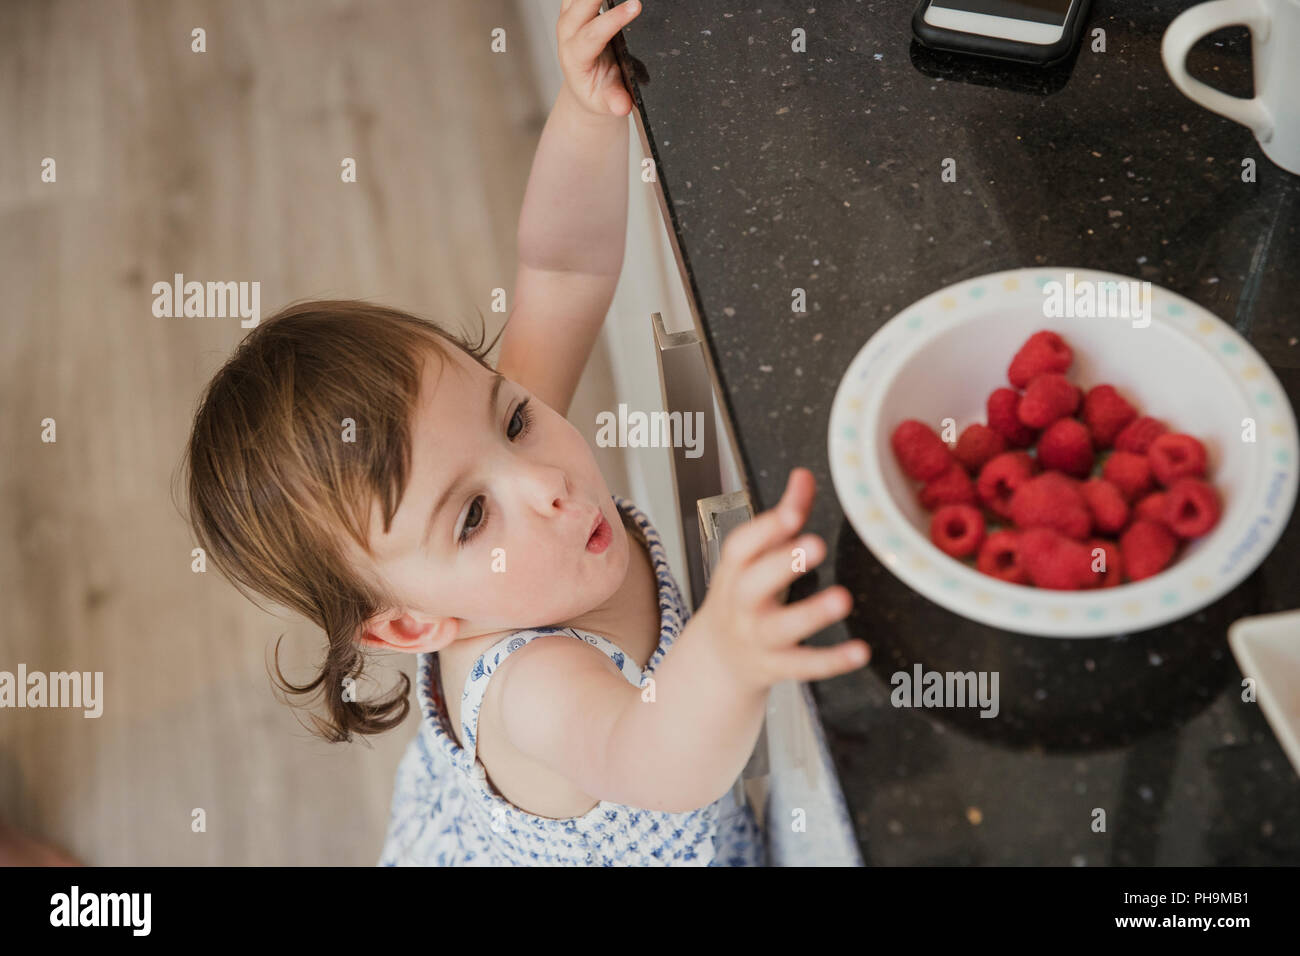 Un alto ángulo de vista de una niña en un kicthen standning y hasta llegar a través de la encimera de la cocina para coger algo de frambuesas. Foto de stock